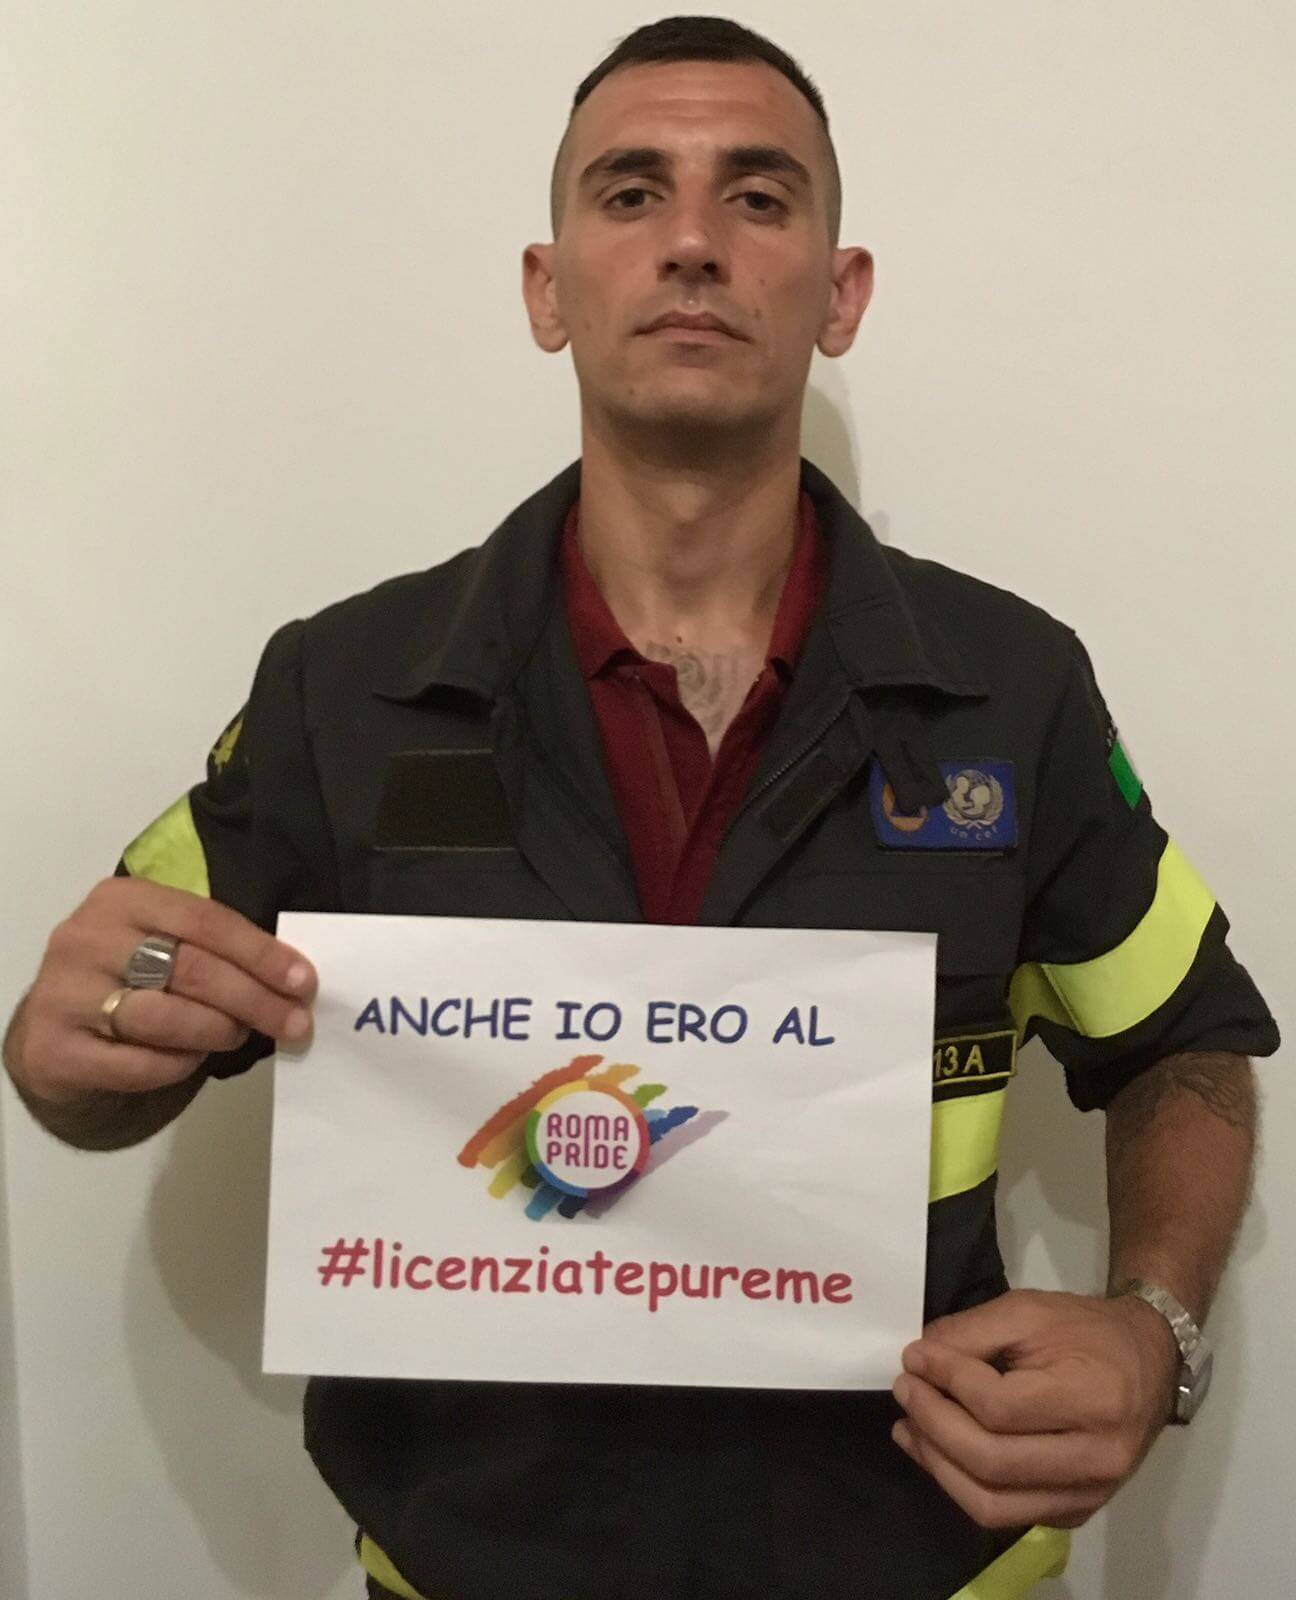 #Licenziatepureme: la campagna in difesa del pompiere al Pride di Roma - IMG 20170712 WA0001 - Gay.it